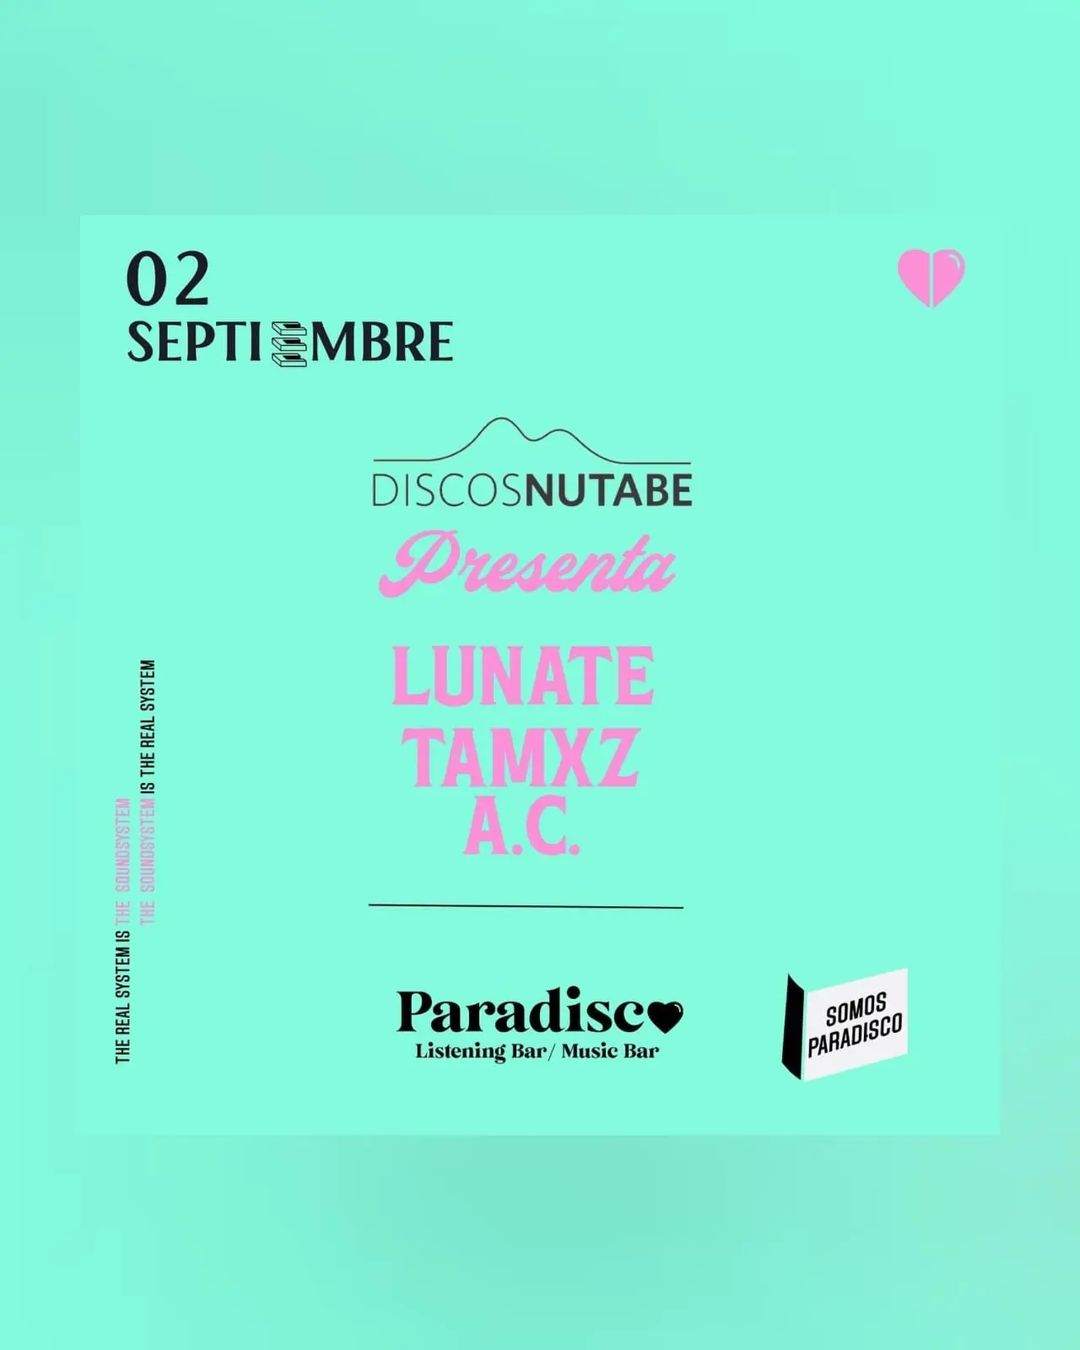 Discos Nutabe presenta: Lunate / Tamxz / A.C. - フライヤー表